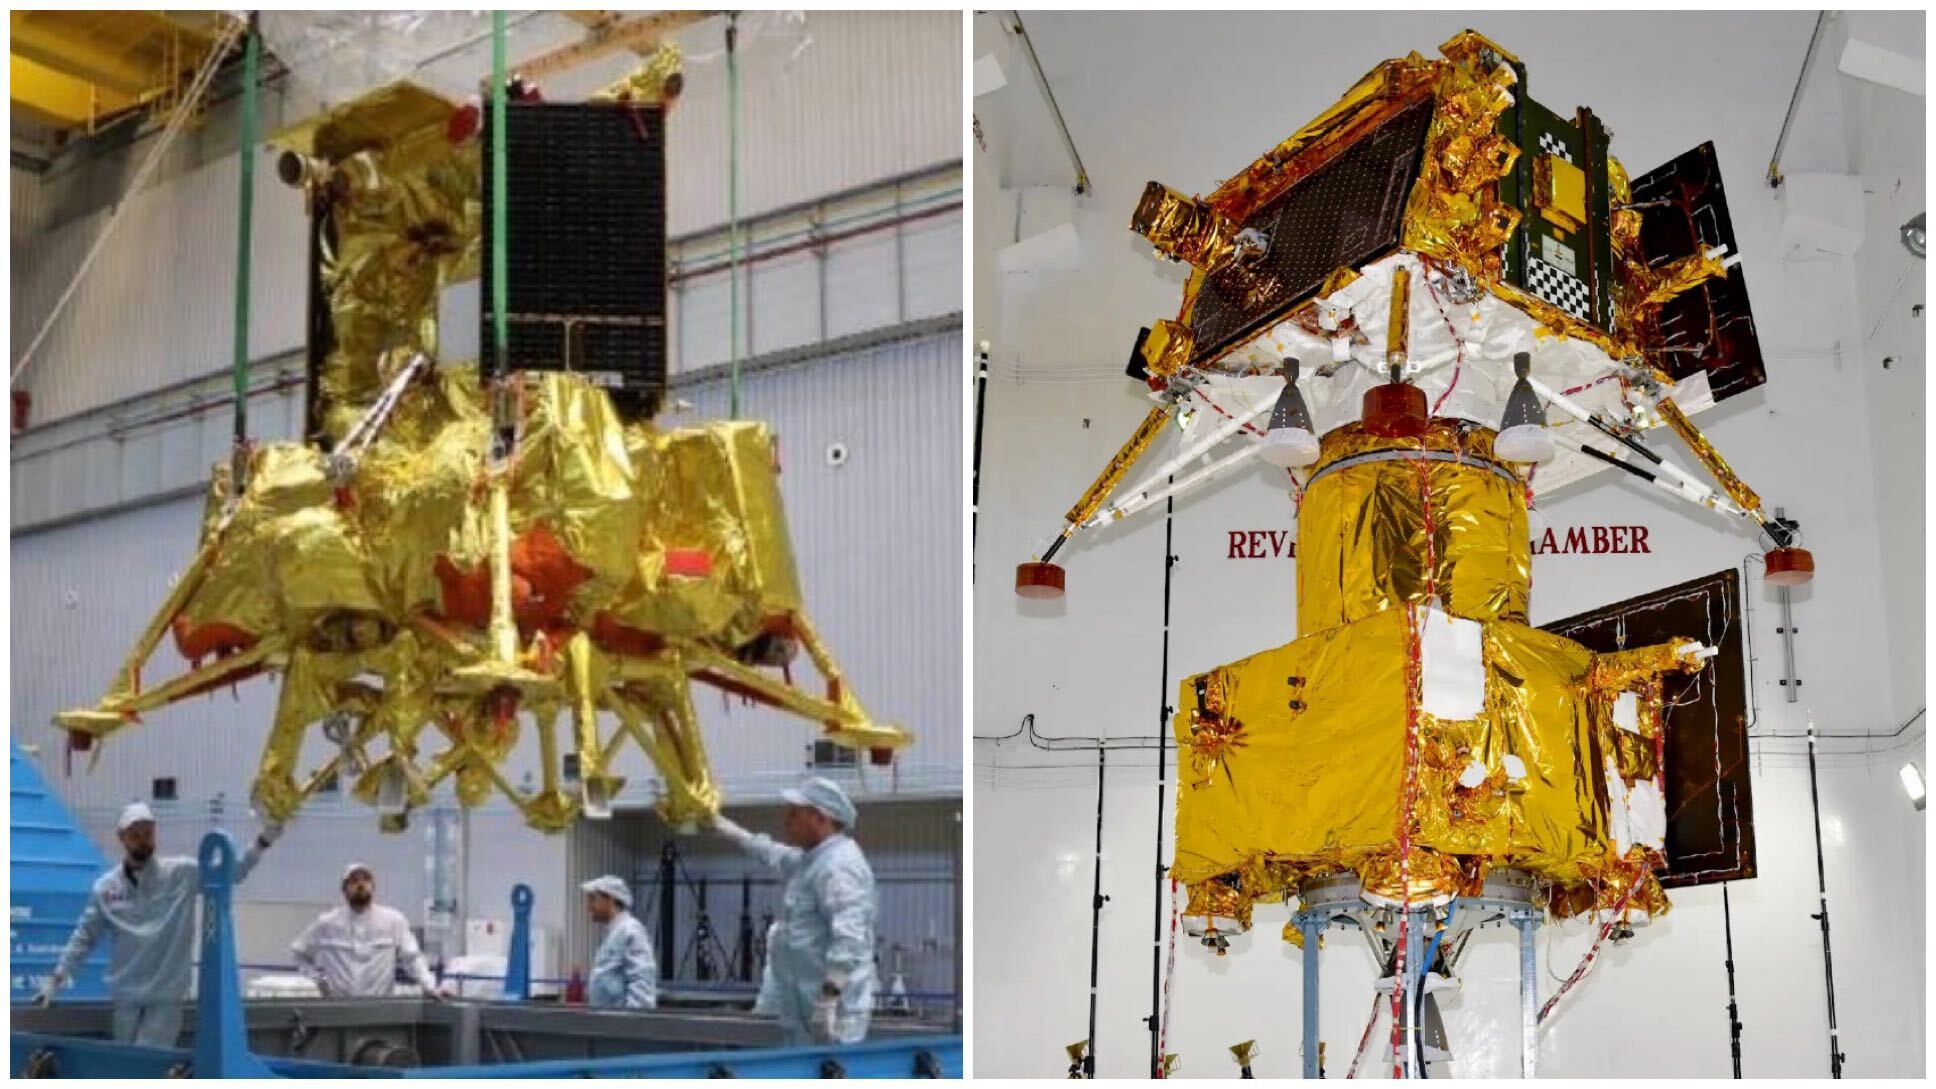 الصورة اليسرى: فنيو المختبر المناسبون يعملون على مركبة فضائية مغطاة بالذهب.  الصورة اليمنى: المسبار القمري الهندي الذهبي والأسود والمركبة الجوالة ومركبتها الفضائية المكوكية في غرفة نظيفة